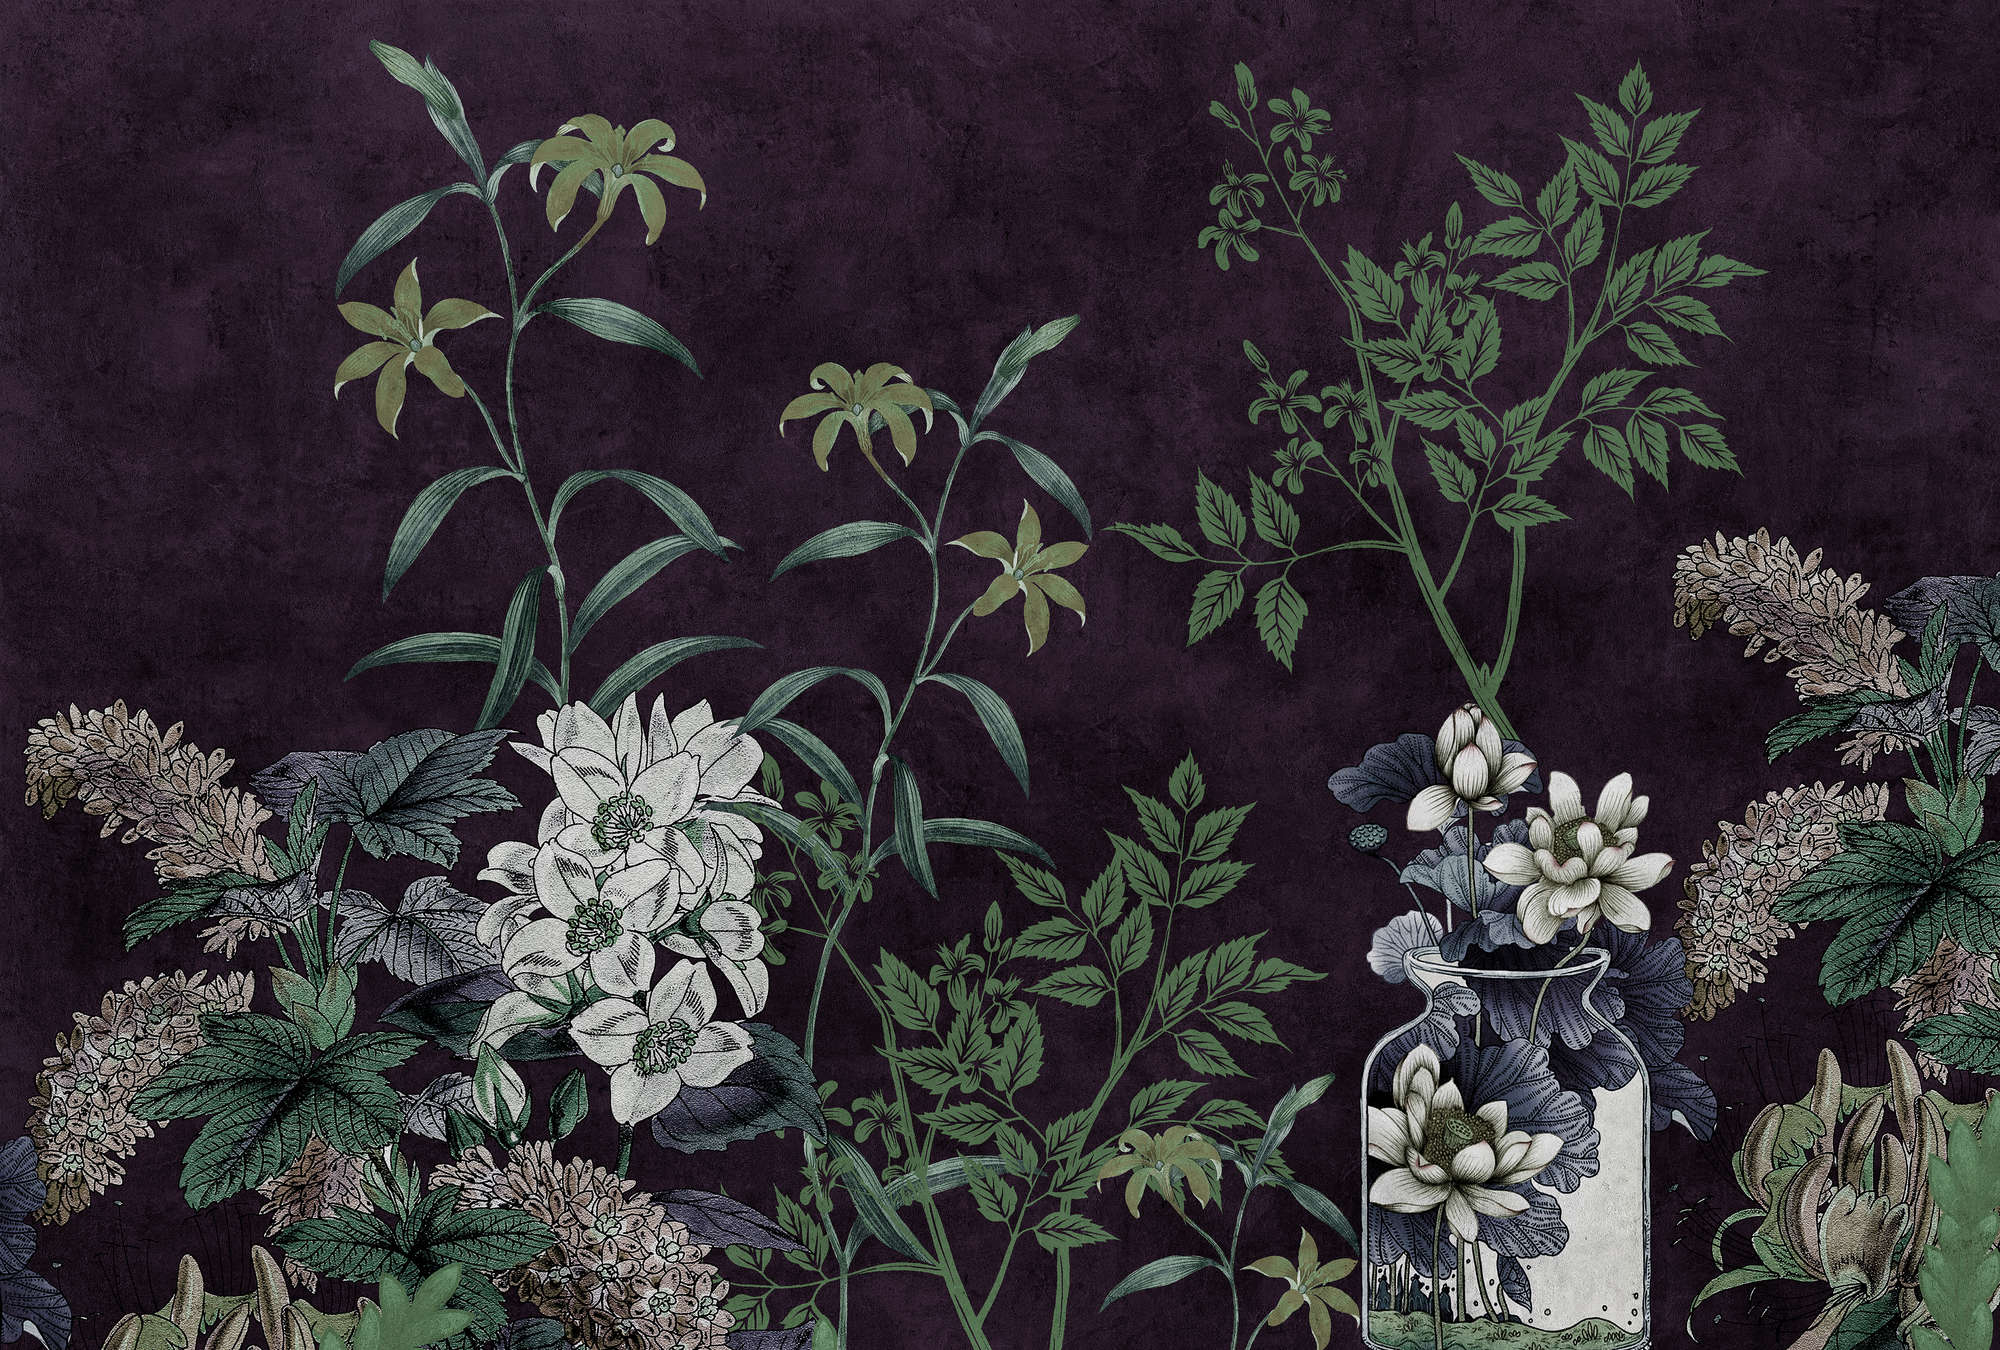             Dark Room 1 - Zwart Behang Botanisch Patroon Groen
        